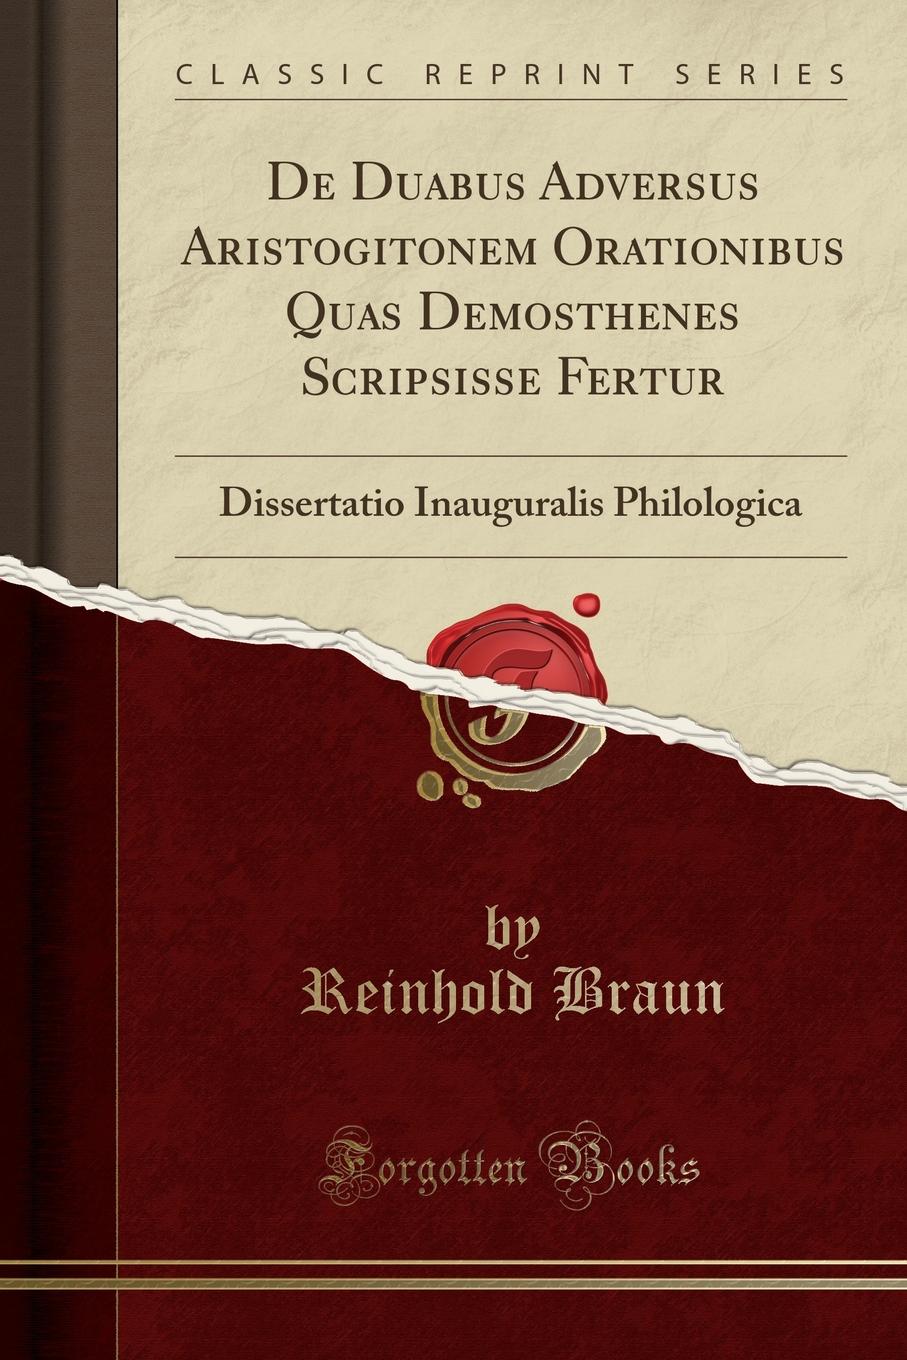 De Duabus Adversus Aristogitonem Orationibus Quas Demosthenes Scripsisse Fertur. Dissertatio Inauguralis Philologica (Classic Reprint)